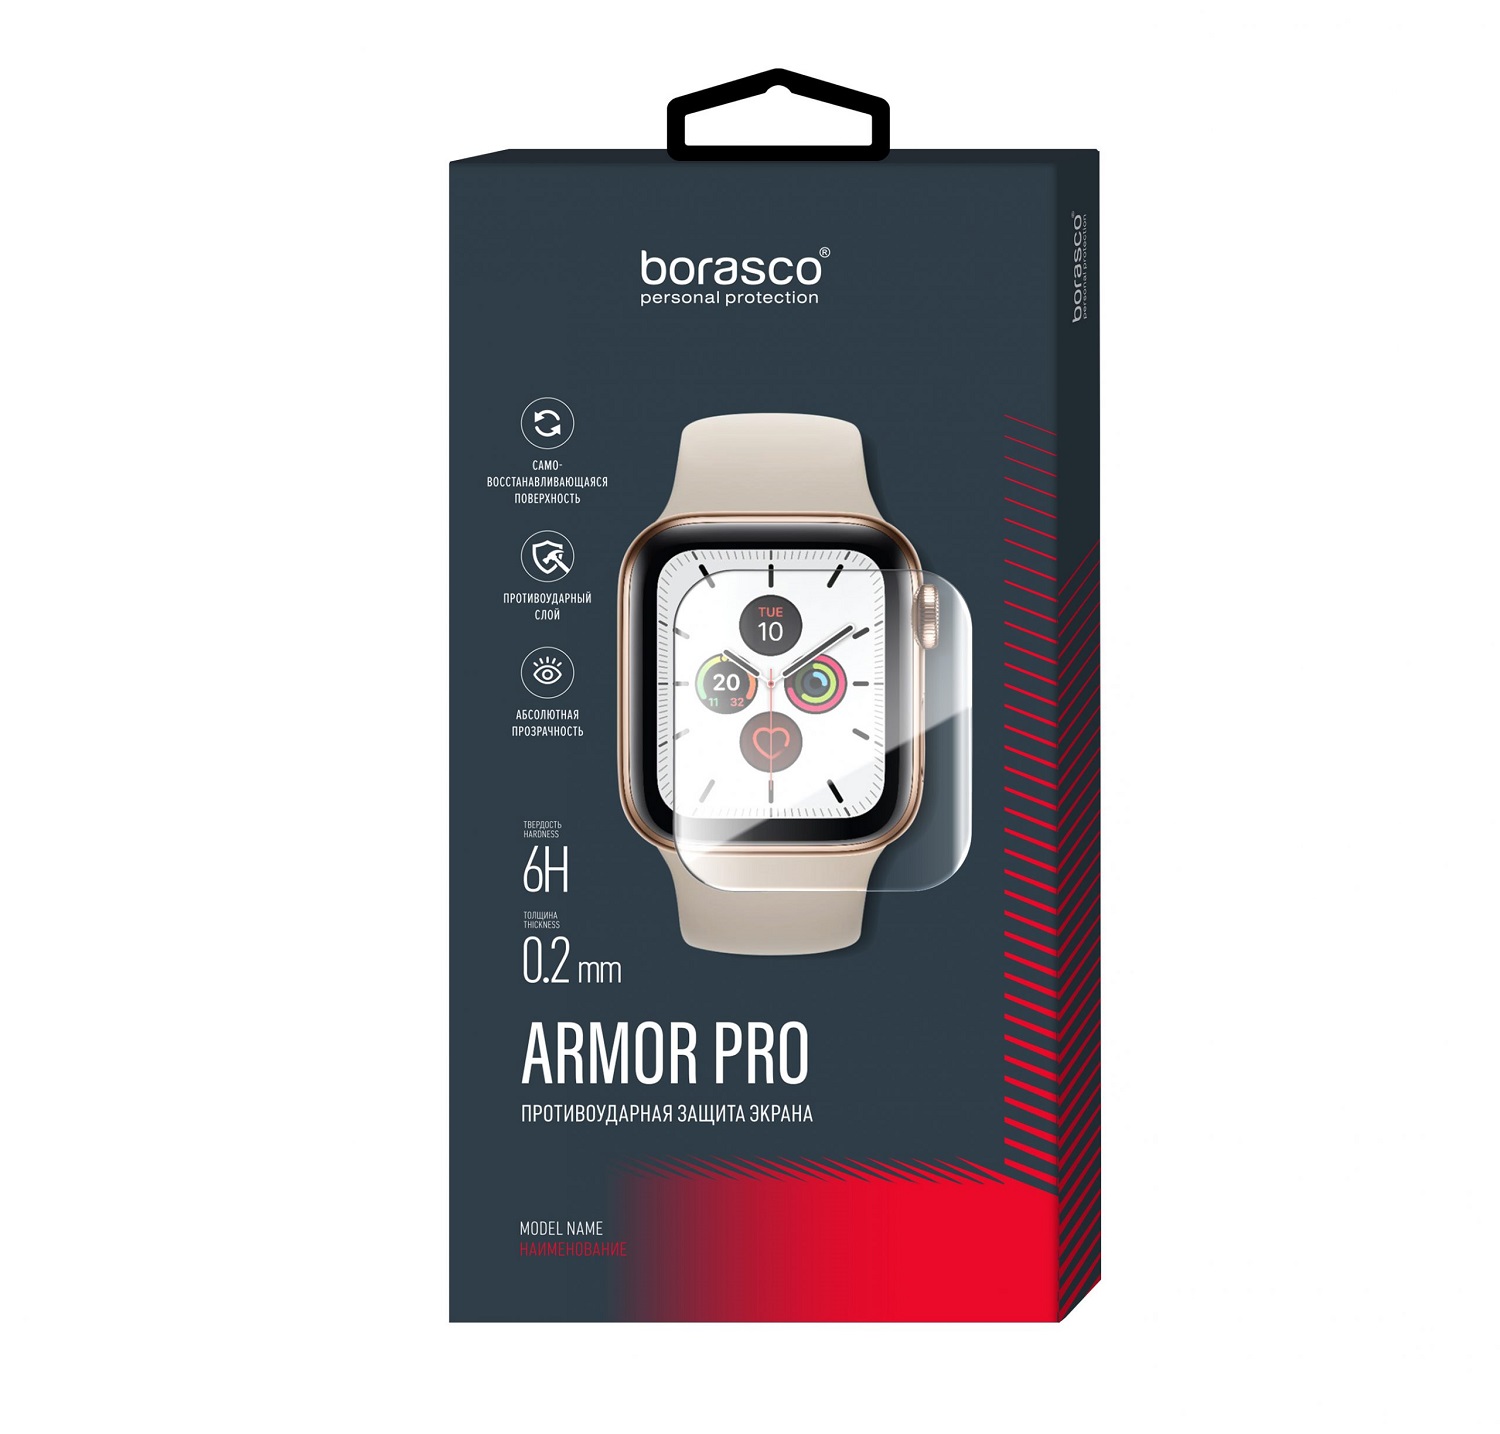 Защита экрана BoraSCO Armor Pro для Xiaomi Mi band 2 защита экрана borasco armor pro для honor band 2